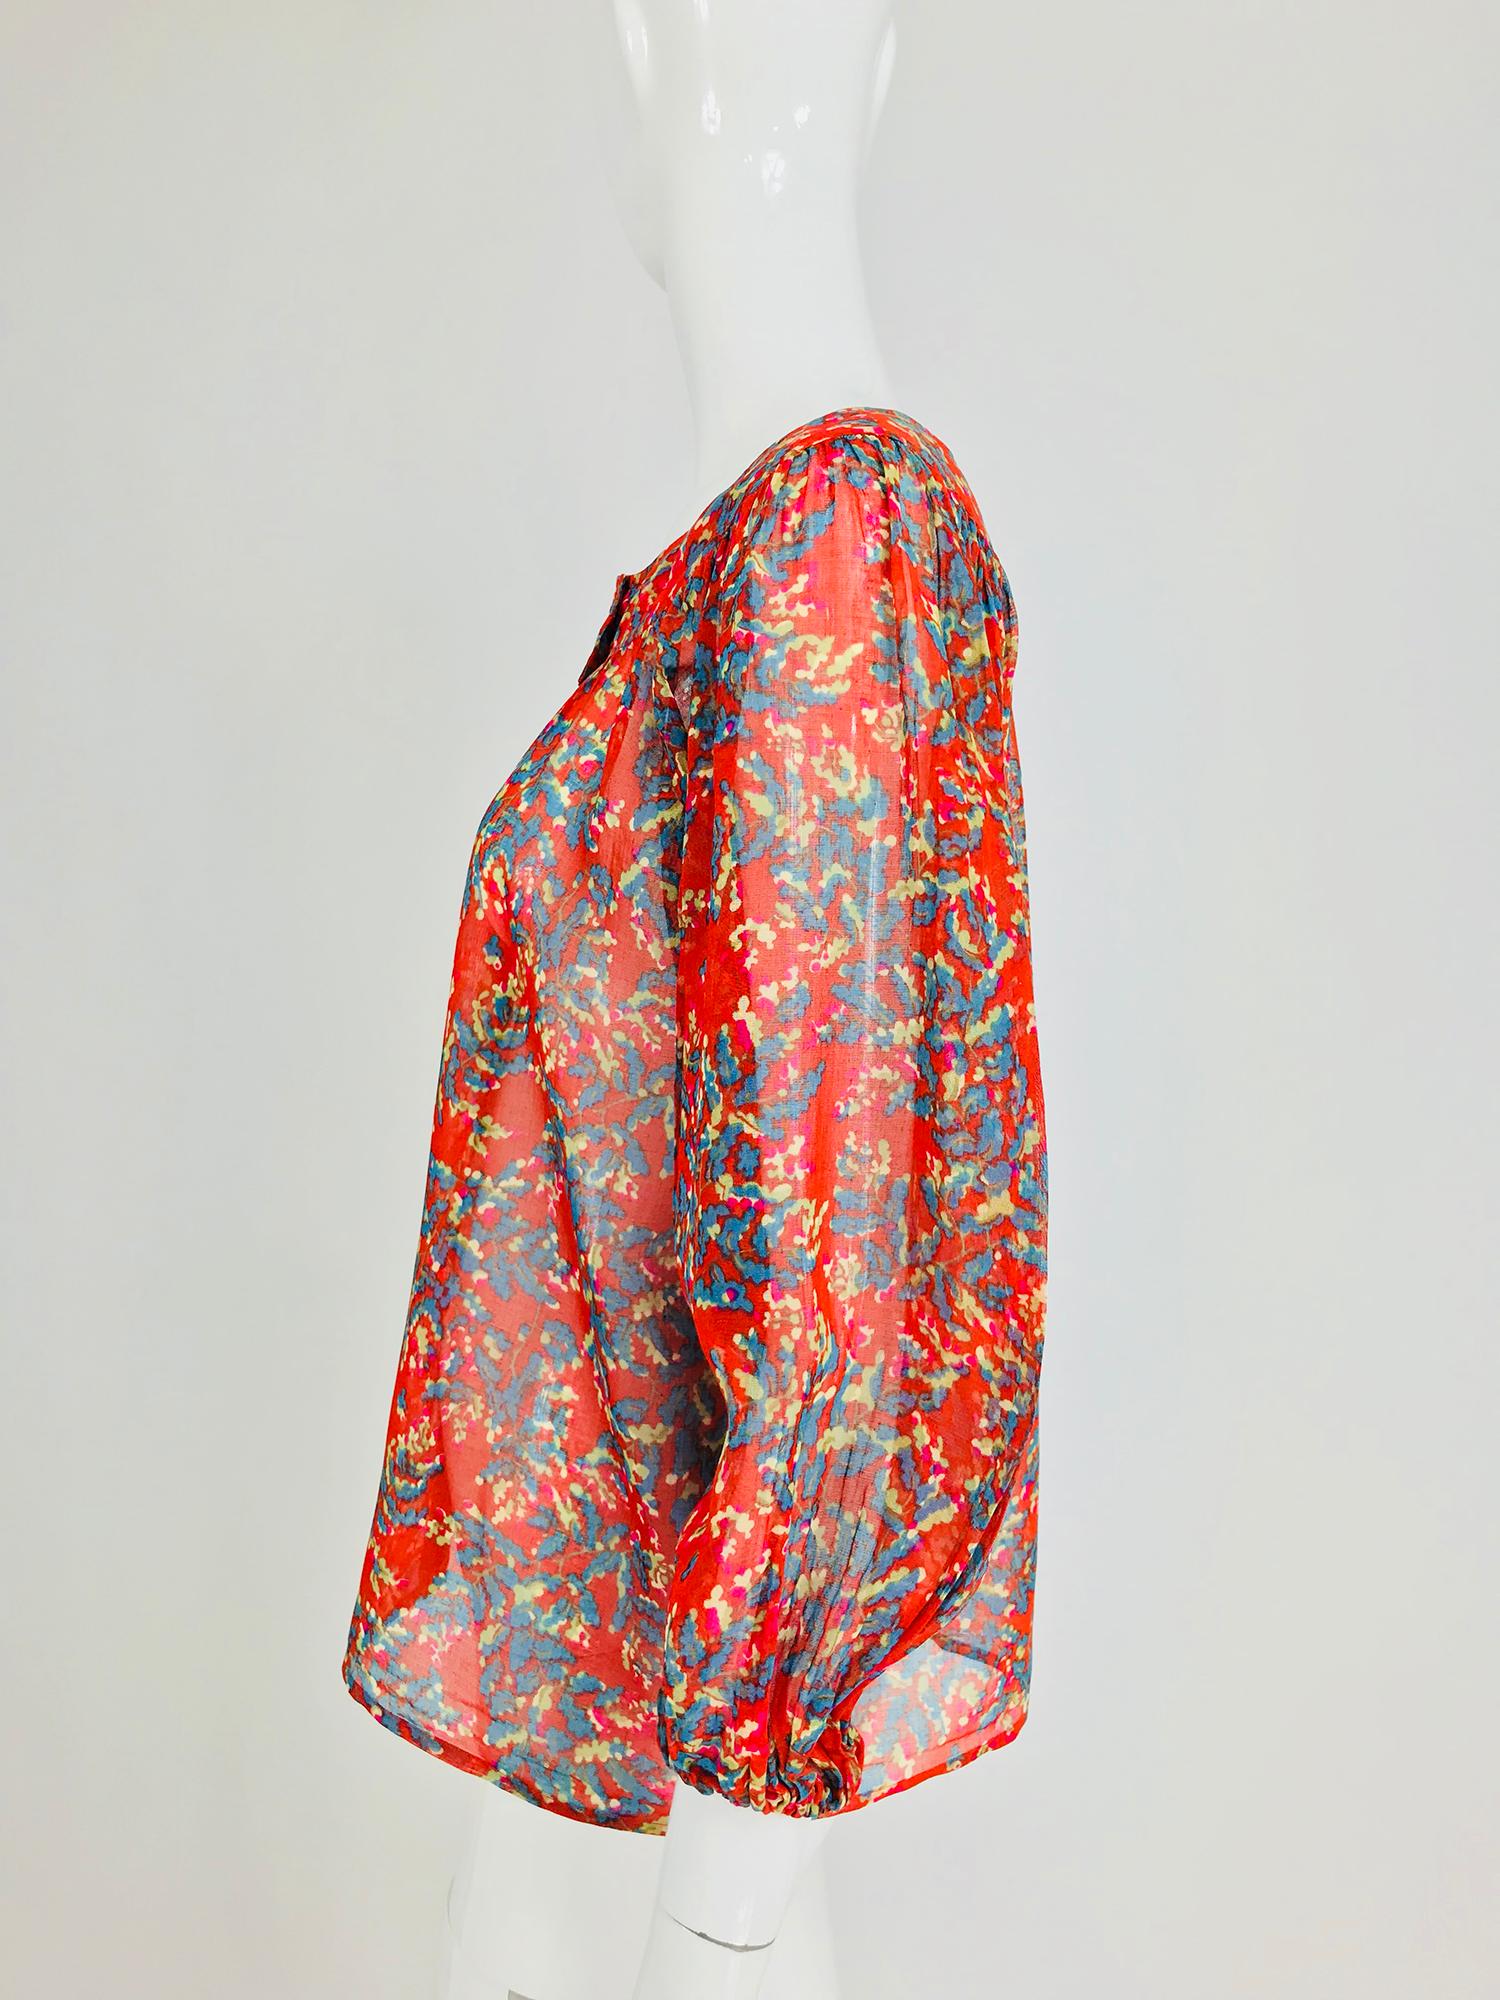 Women's Yves Saint Laurent sheer floral cotton peasant blouse 1970s